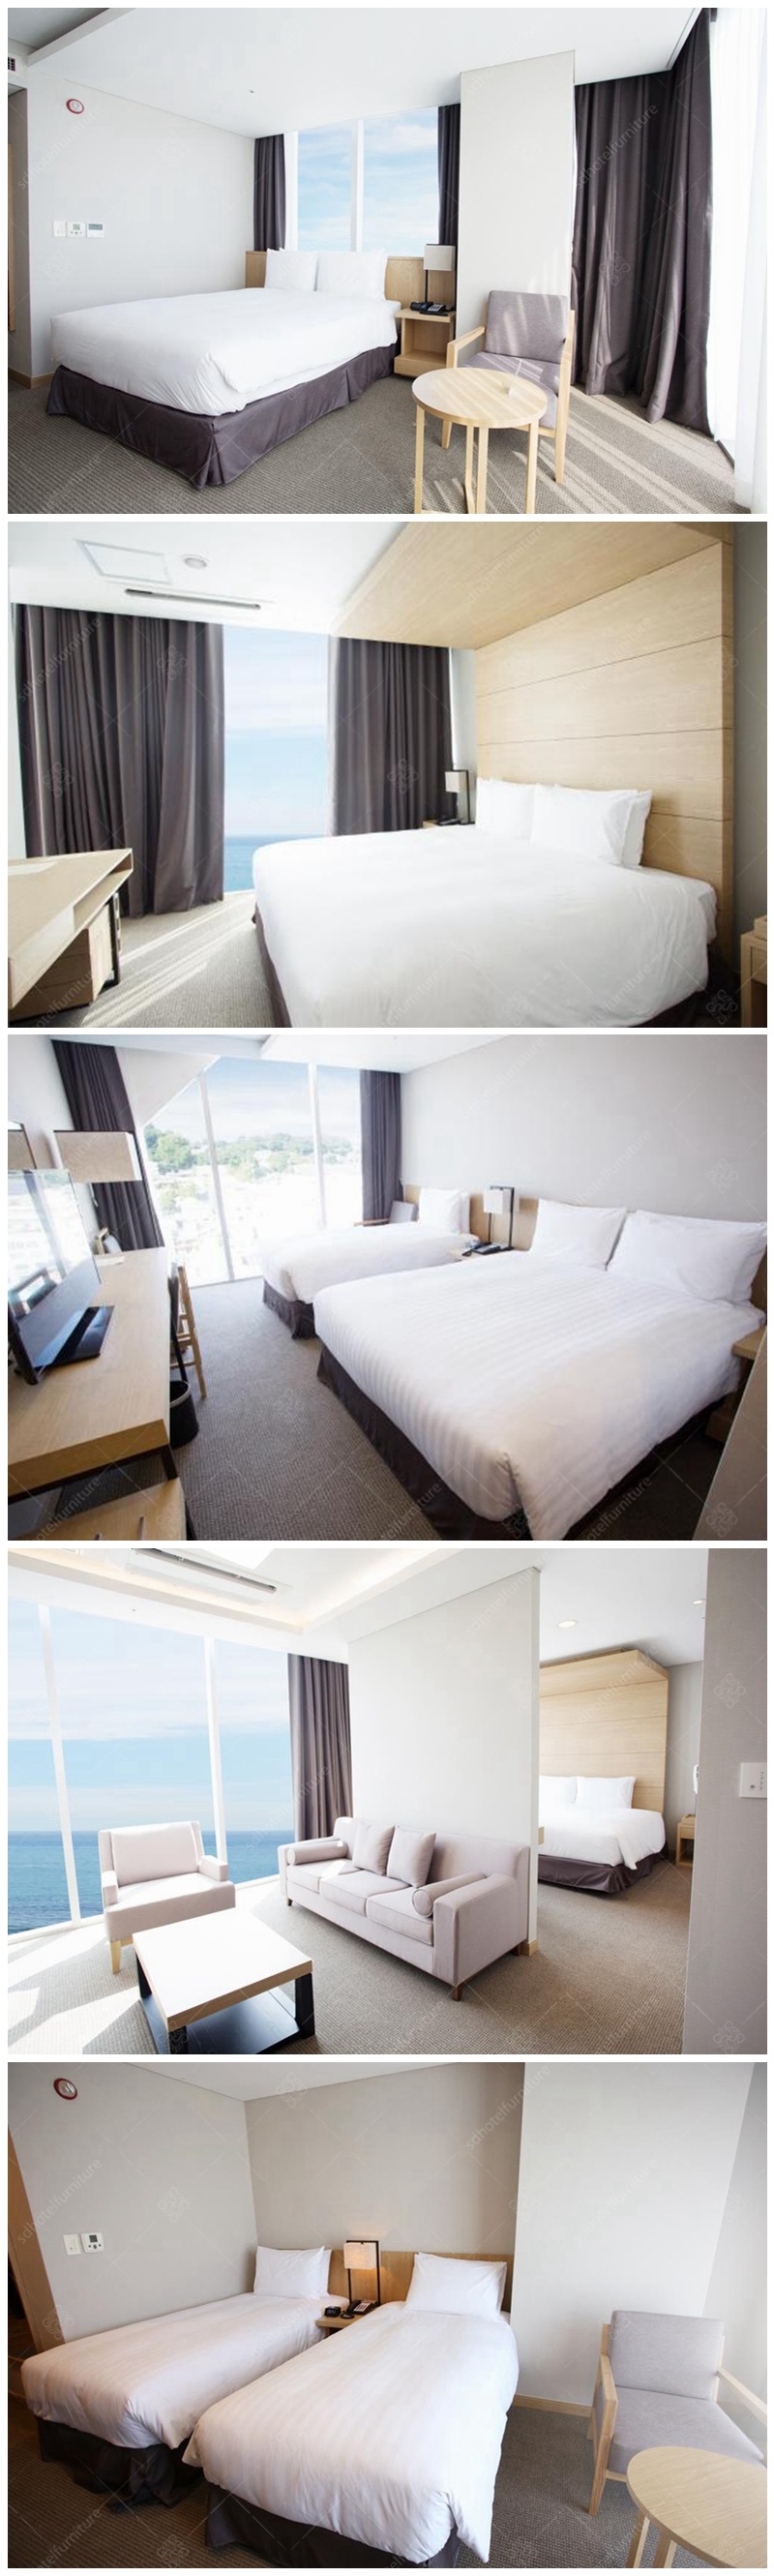 Simple Comfortable Design Hotel Bedroom Furniture Sets Commercial Sets